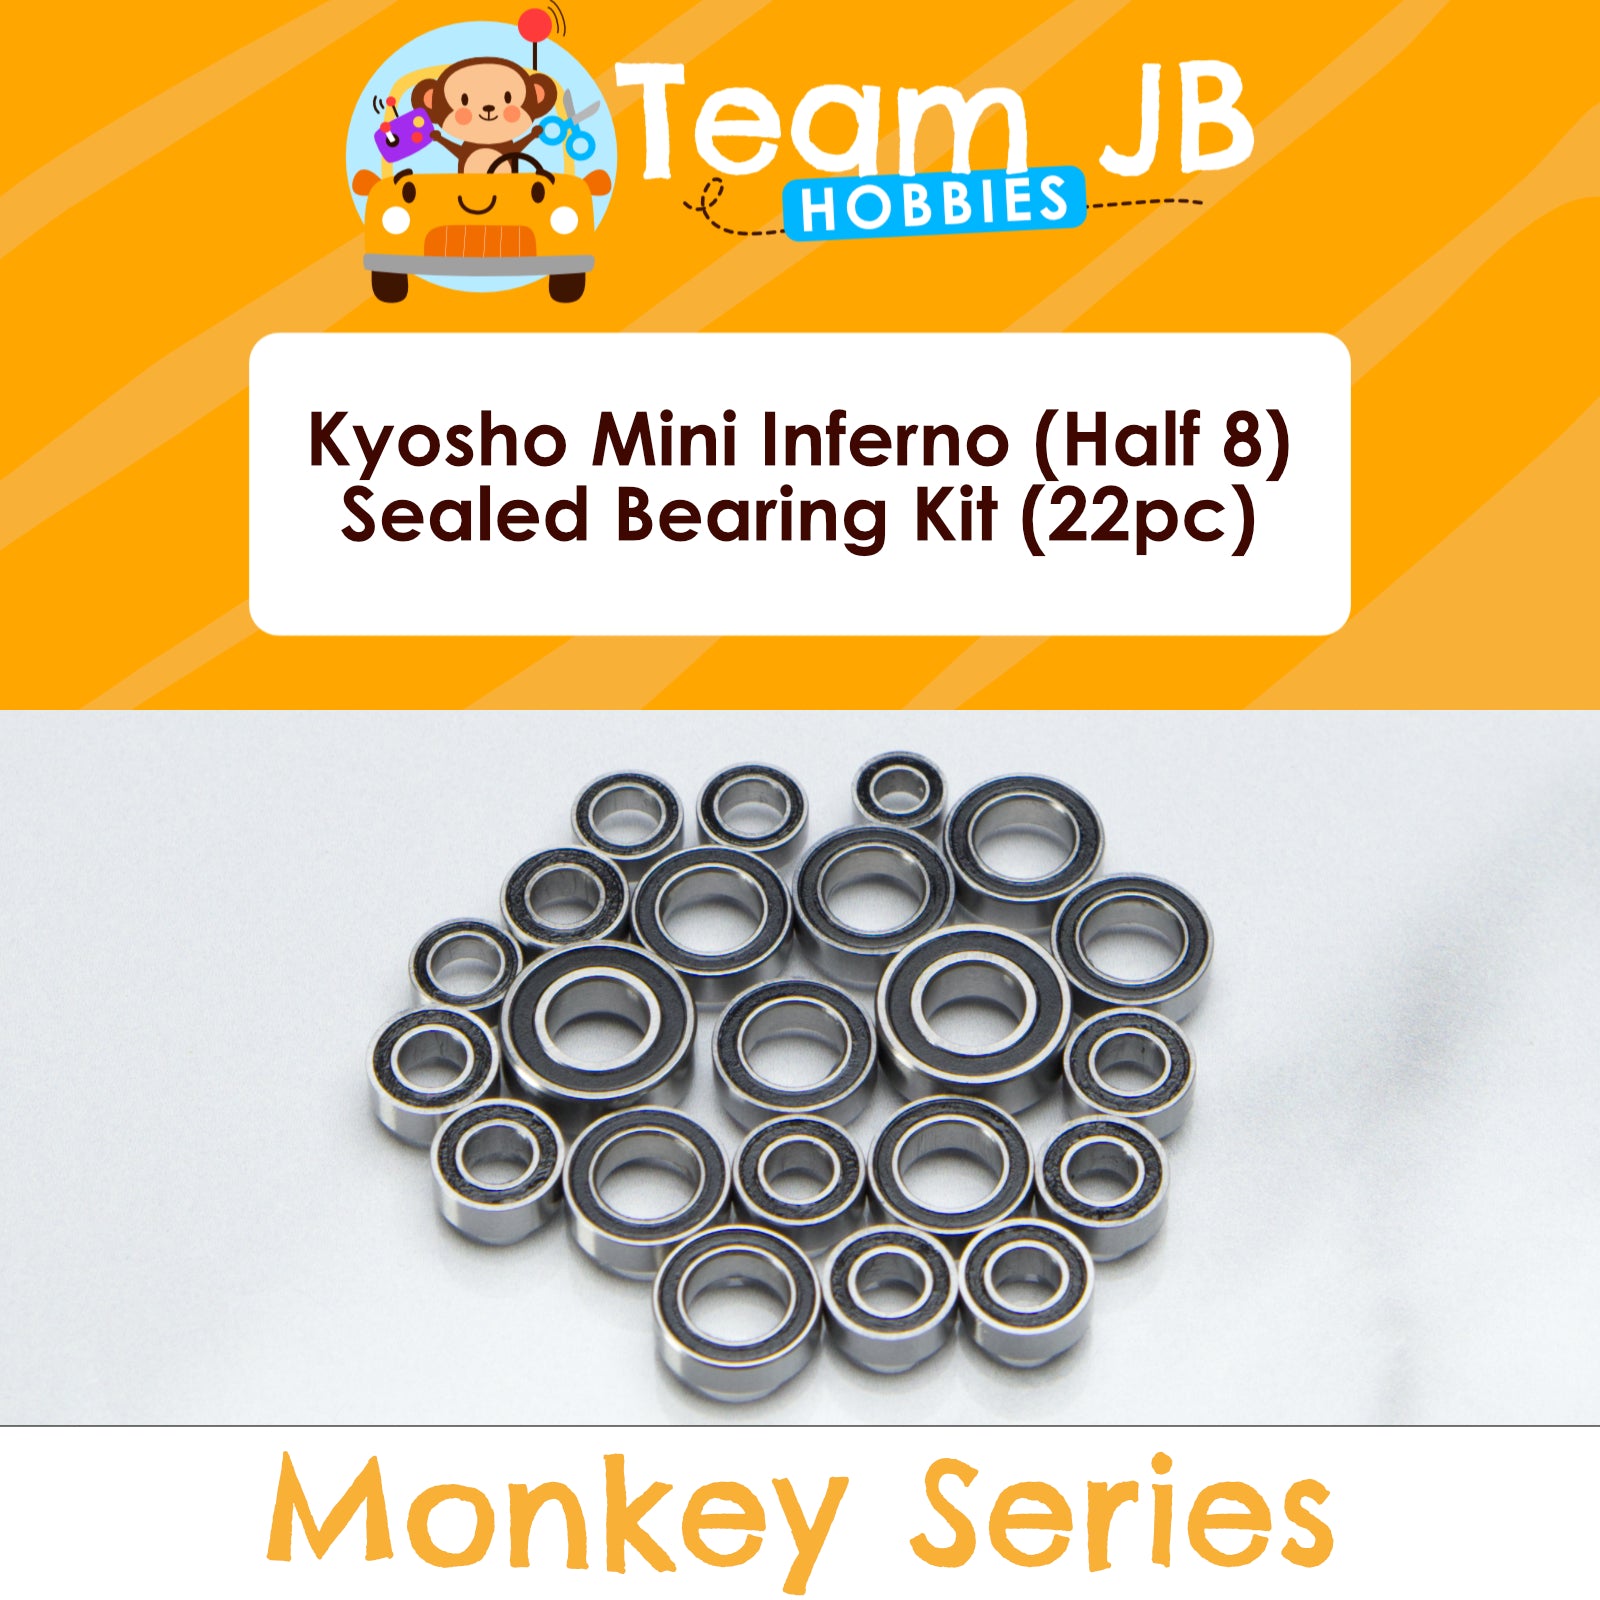 Kyosho Mini Inferno (Half 8) - Sealed Bearing Kit